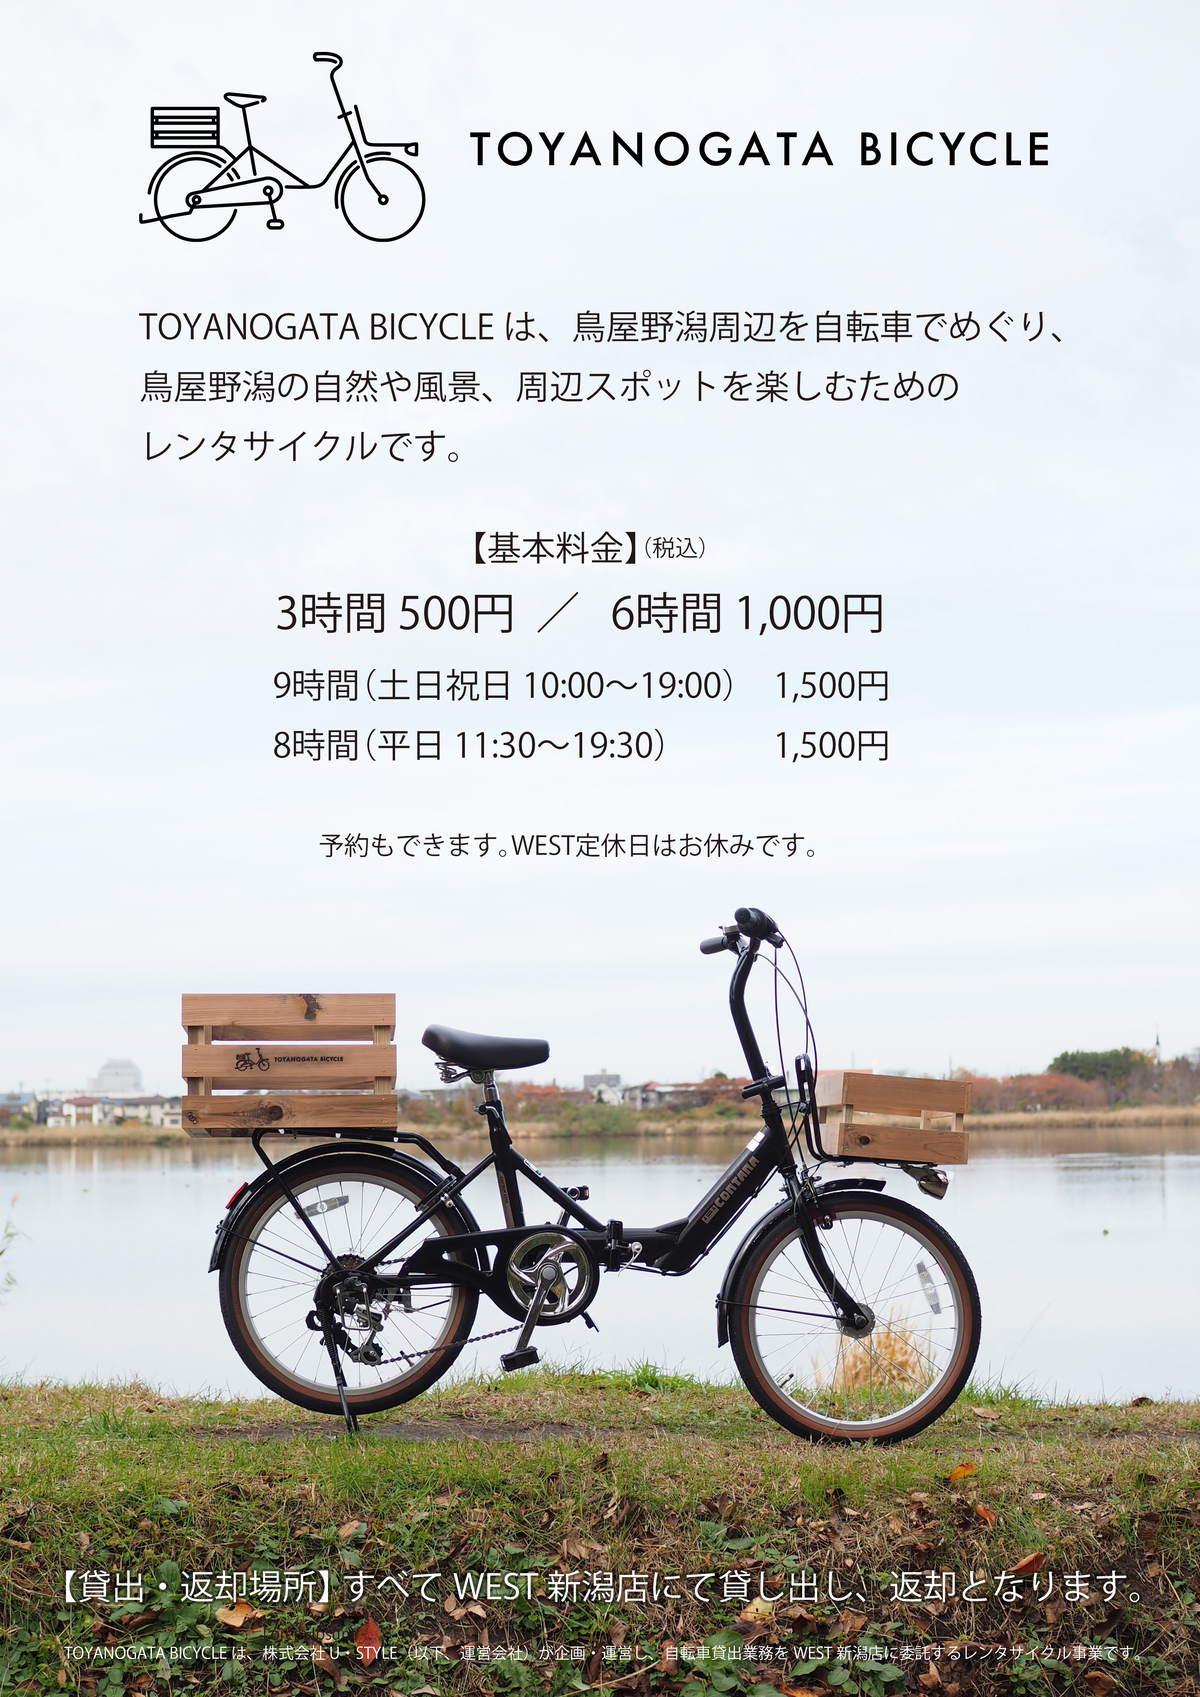 TOYANOGATA BICYCLE